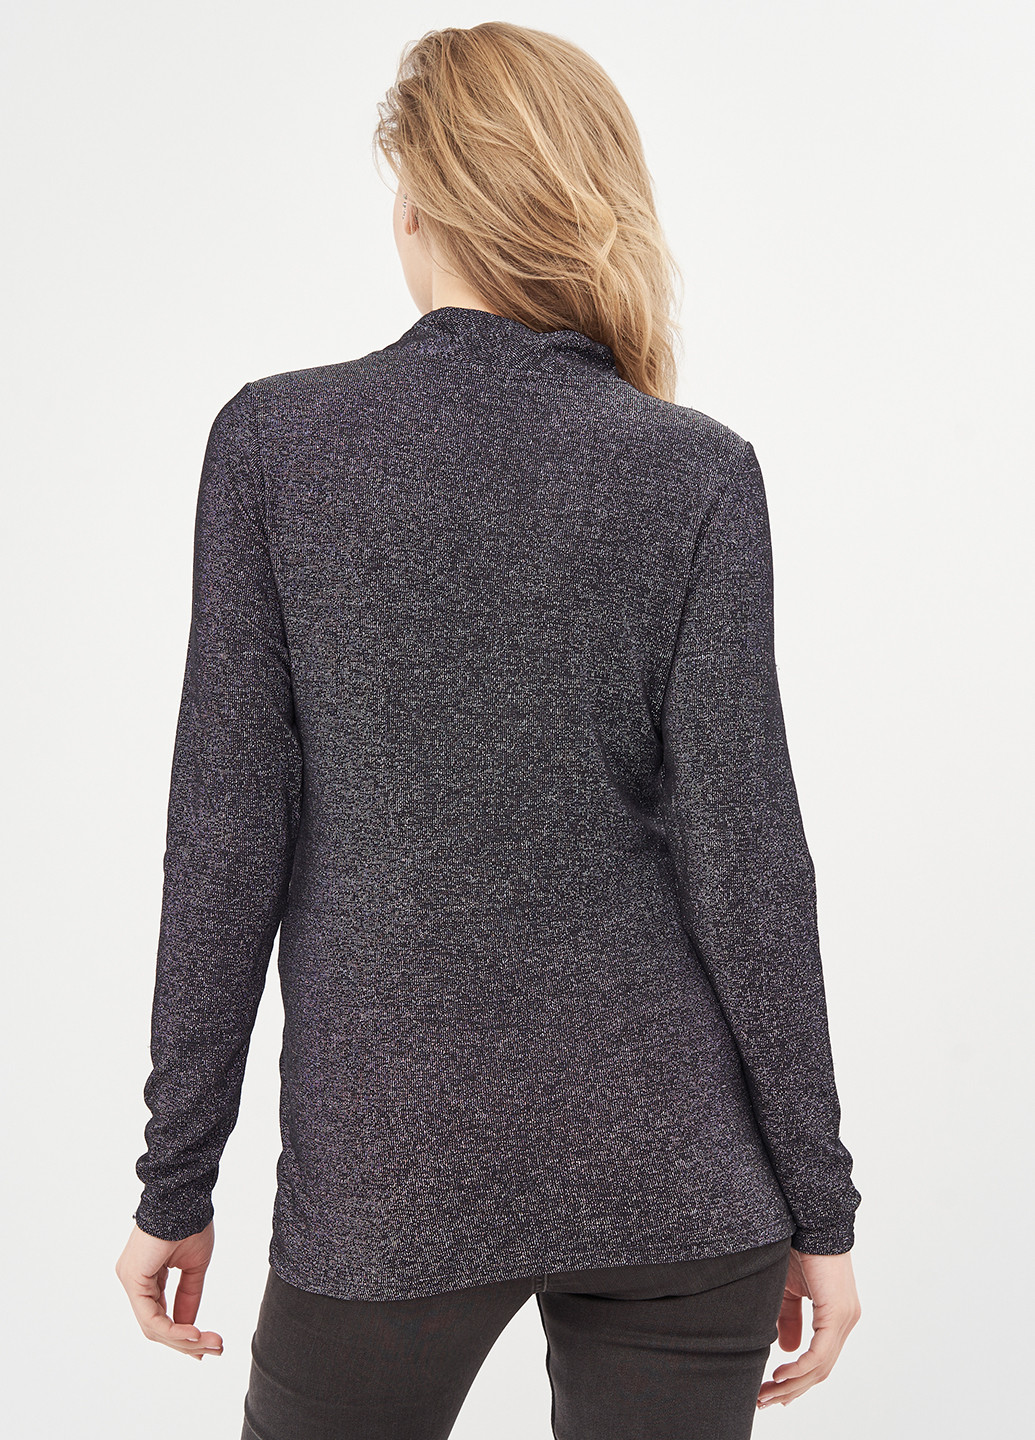 Графитовый демисезонный пуловер для беременных пуловер H&M